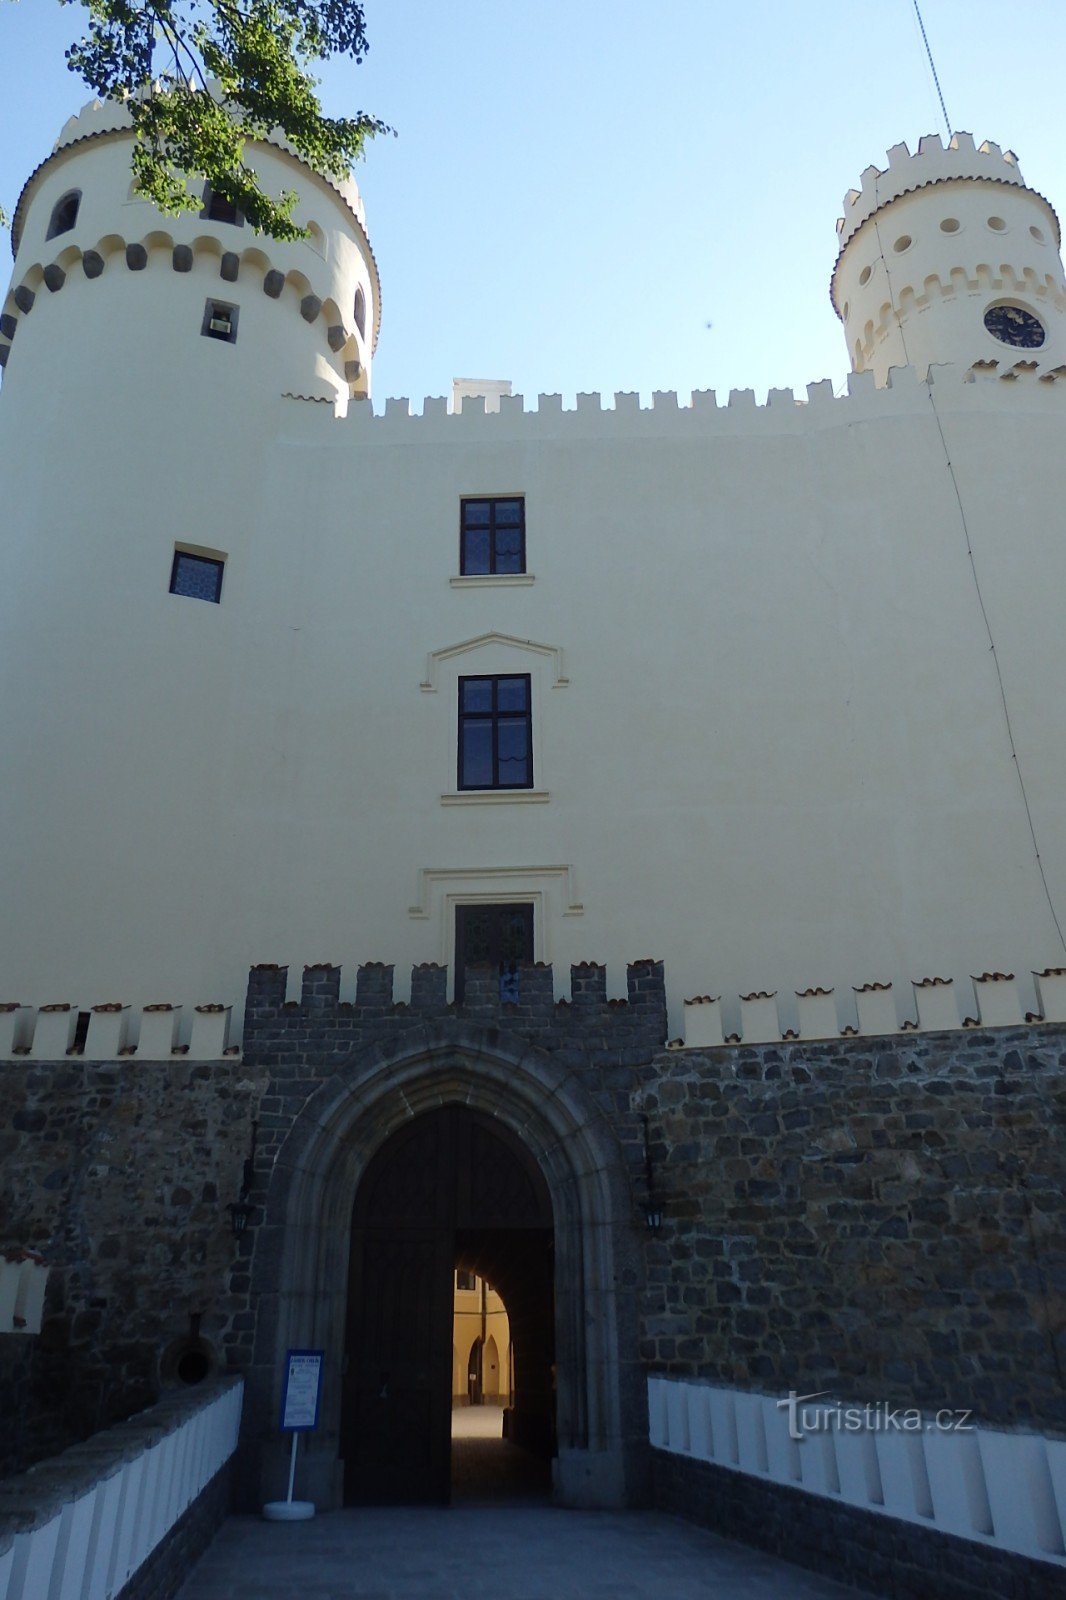 Castelul Orlik